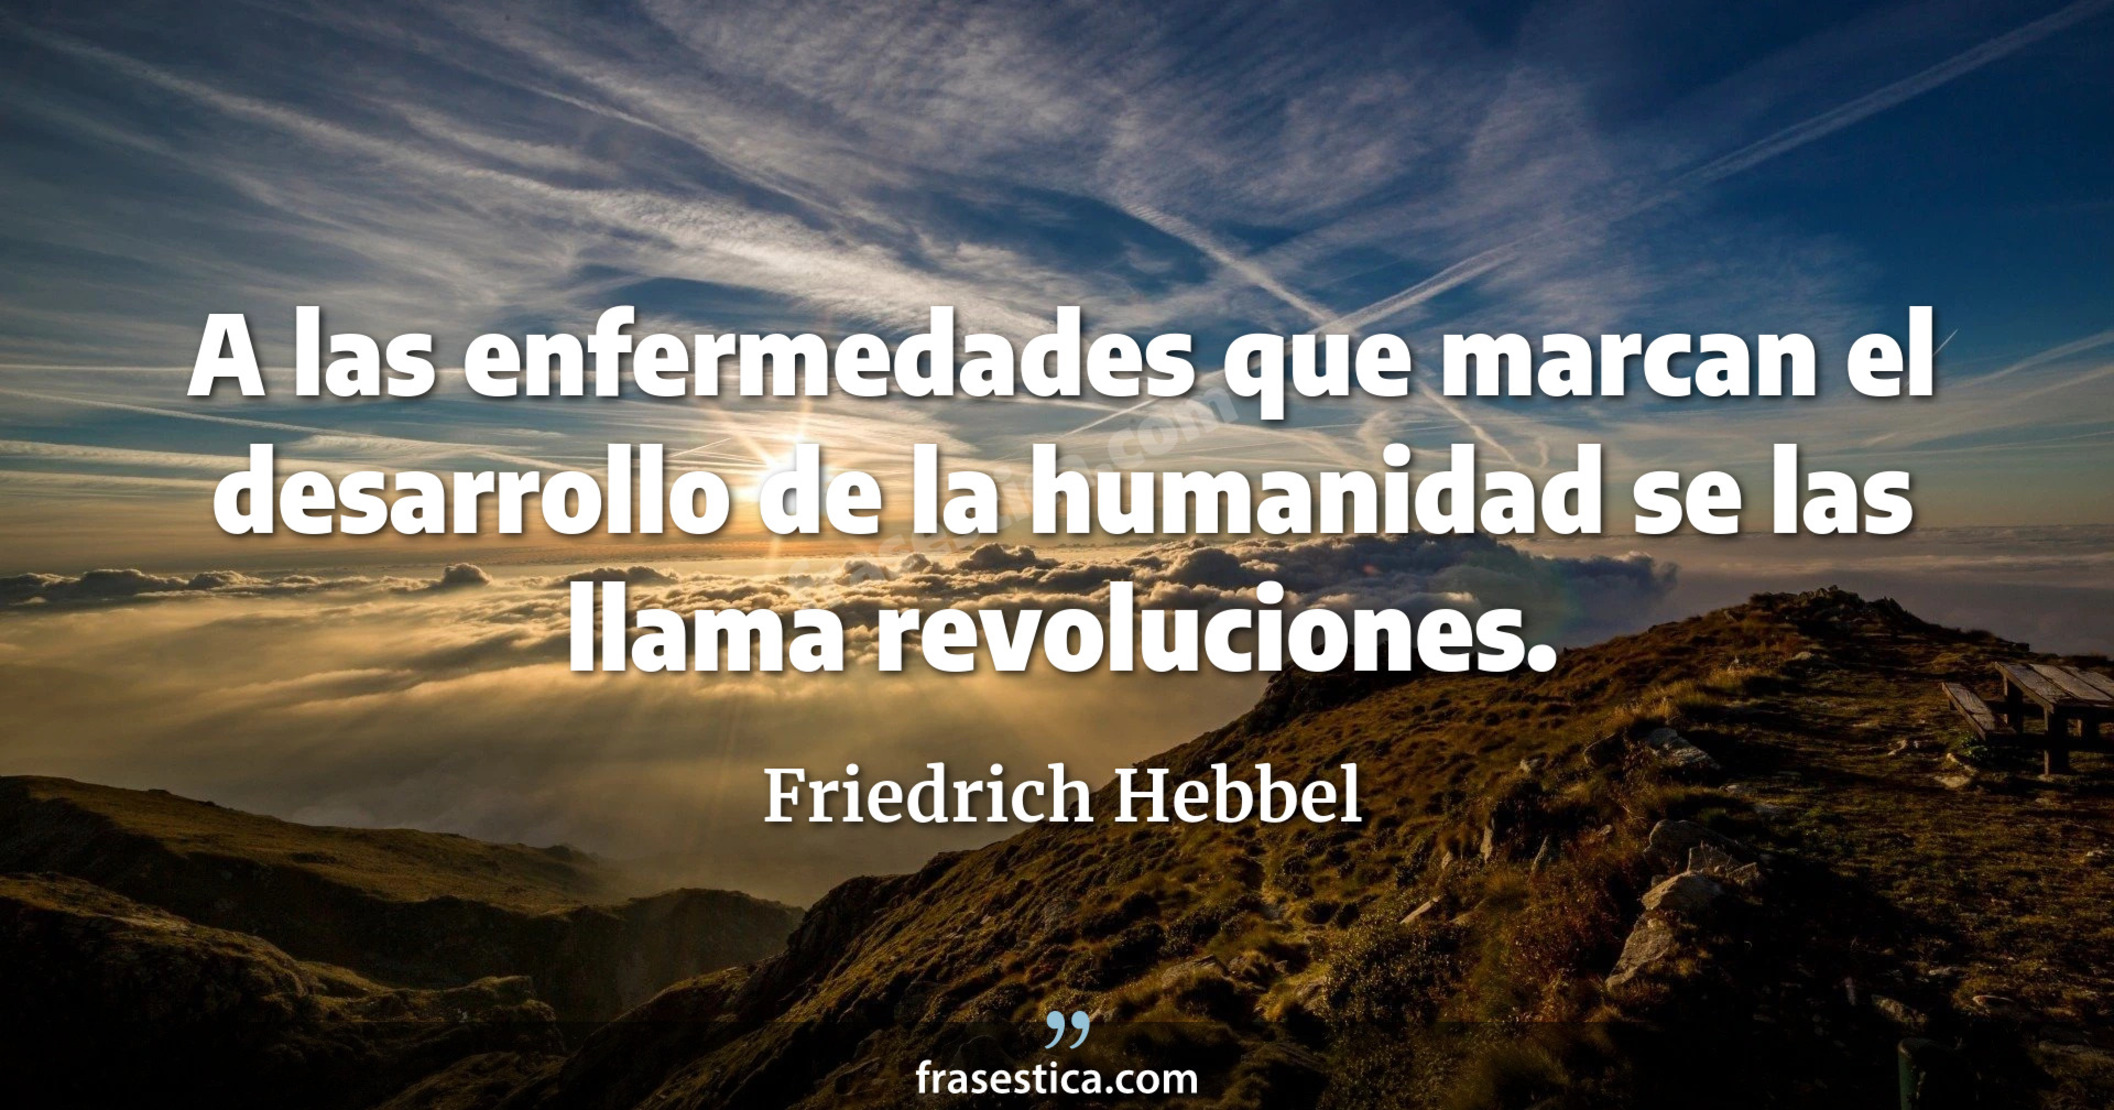 A las enfermedades que marcan el desarrollo de la humanidad se las llama revoluciones. - Friedrich Hebbel